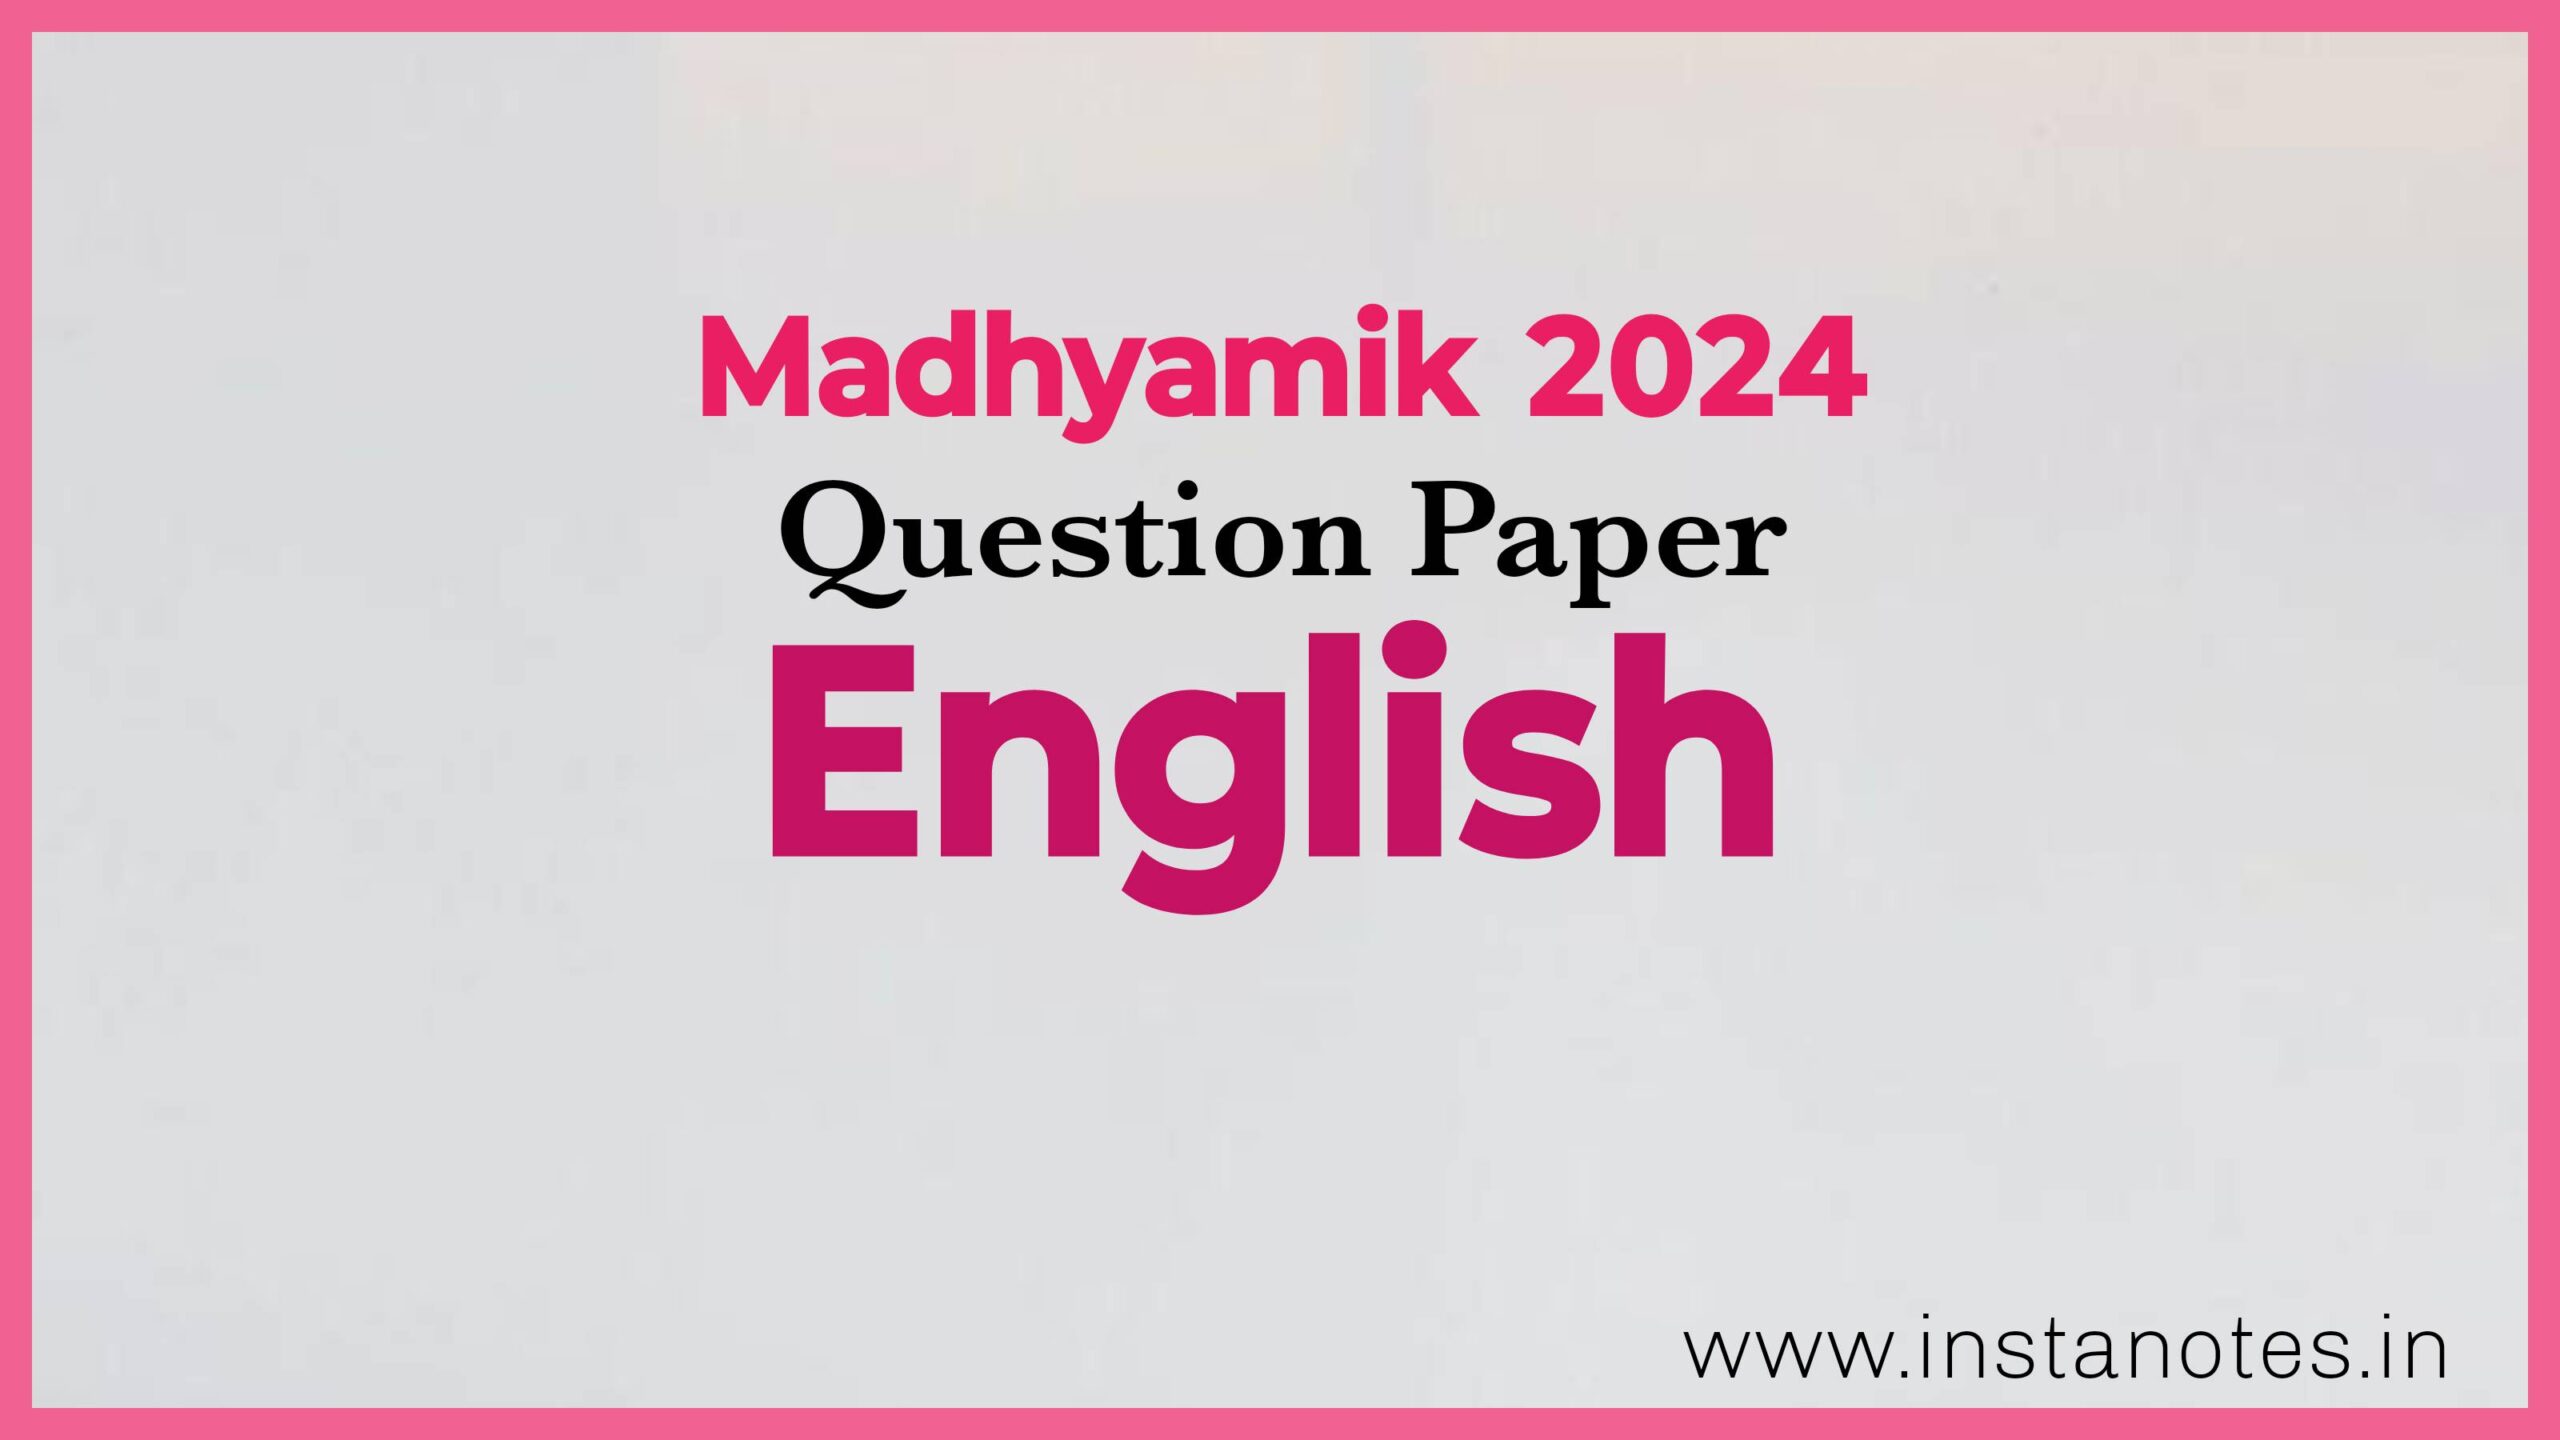 মাধ্যমিক ২০২৪ ইংরেজি প্রশ্নপত্র | Madhyamik 2024 English Question Paper Pdf